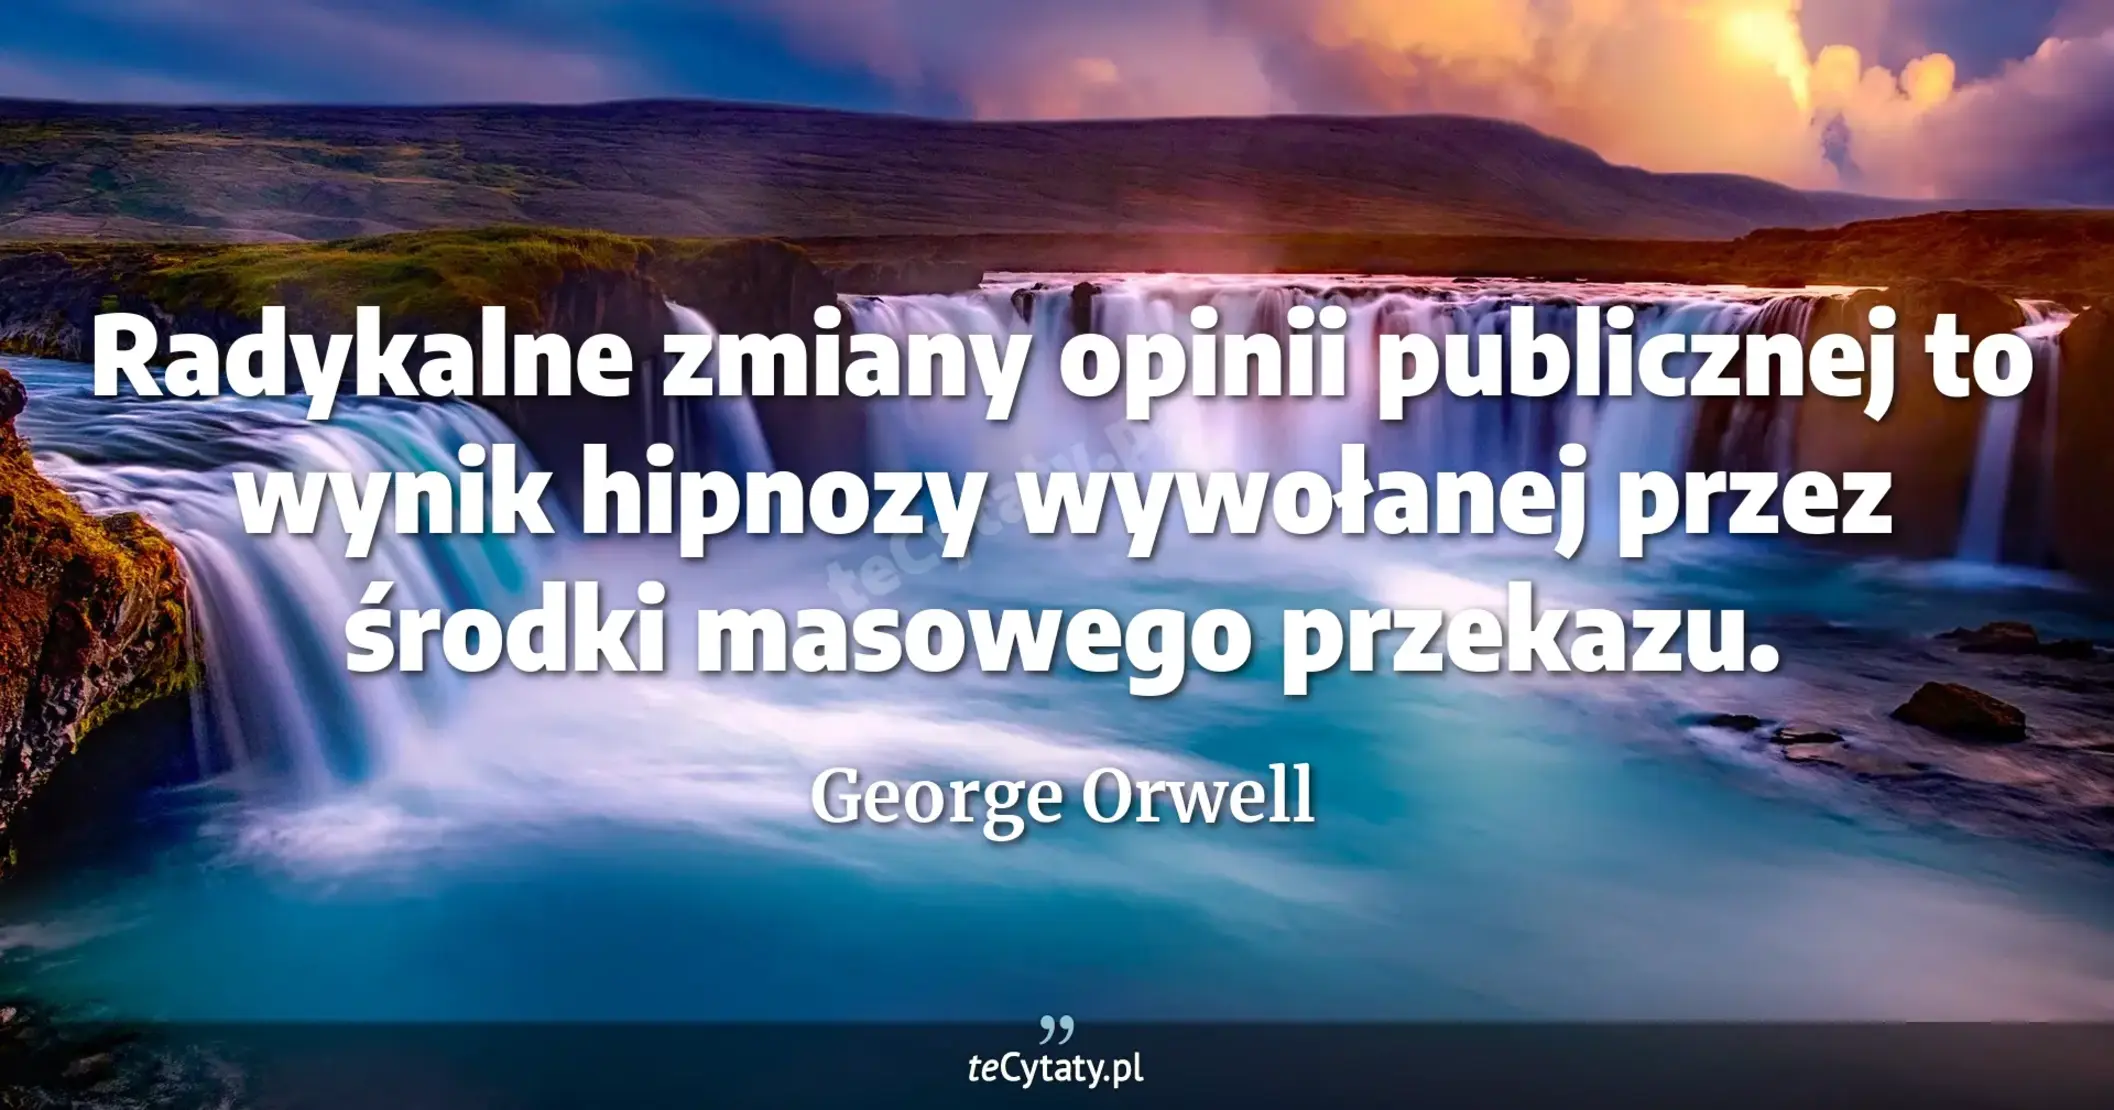 Radykalne zmiany opinii publicznej to wynik hipnozy wywołanej przez środki masowego przekazu. - George Orwell